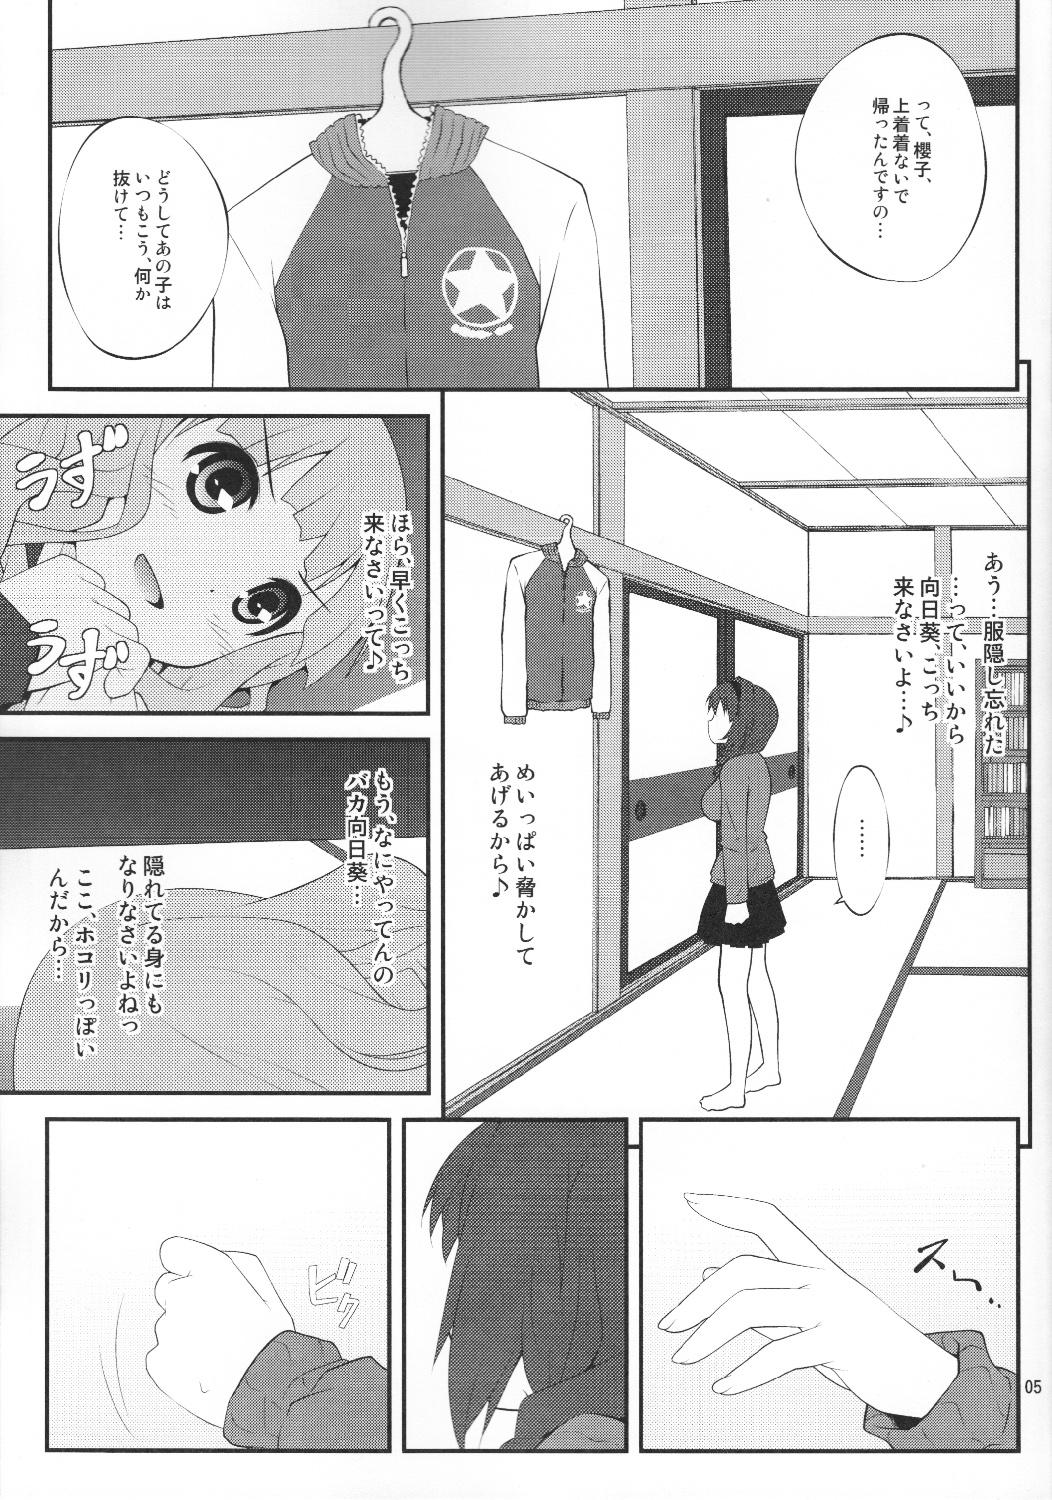 Bikini Himegoto Flowers - Yuruyuri White - Page 4